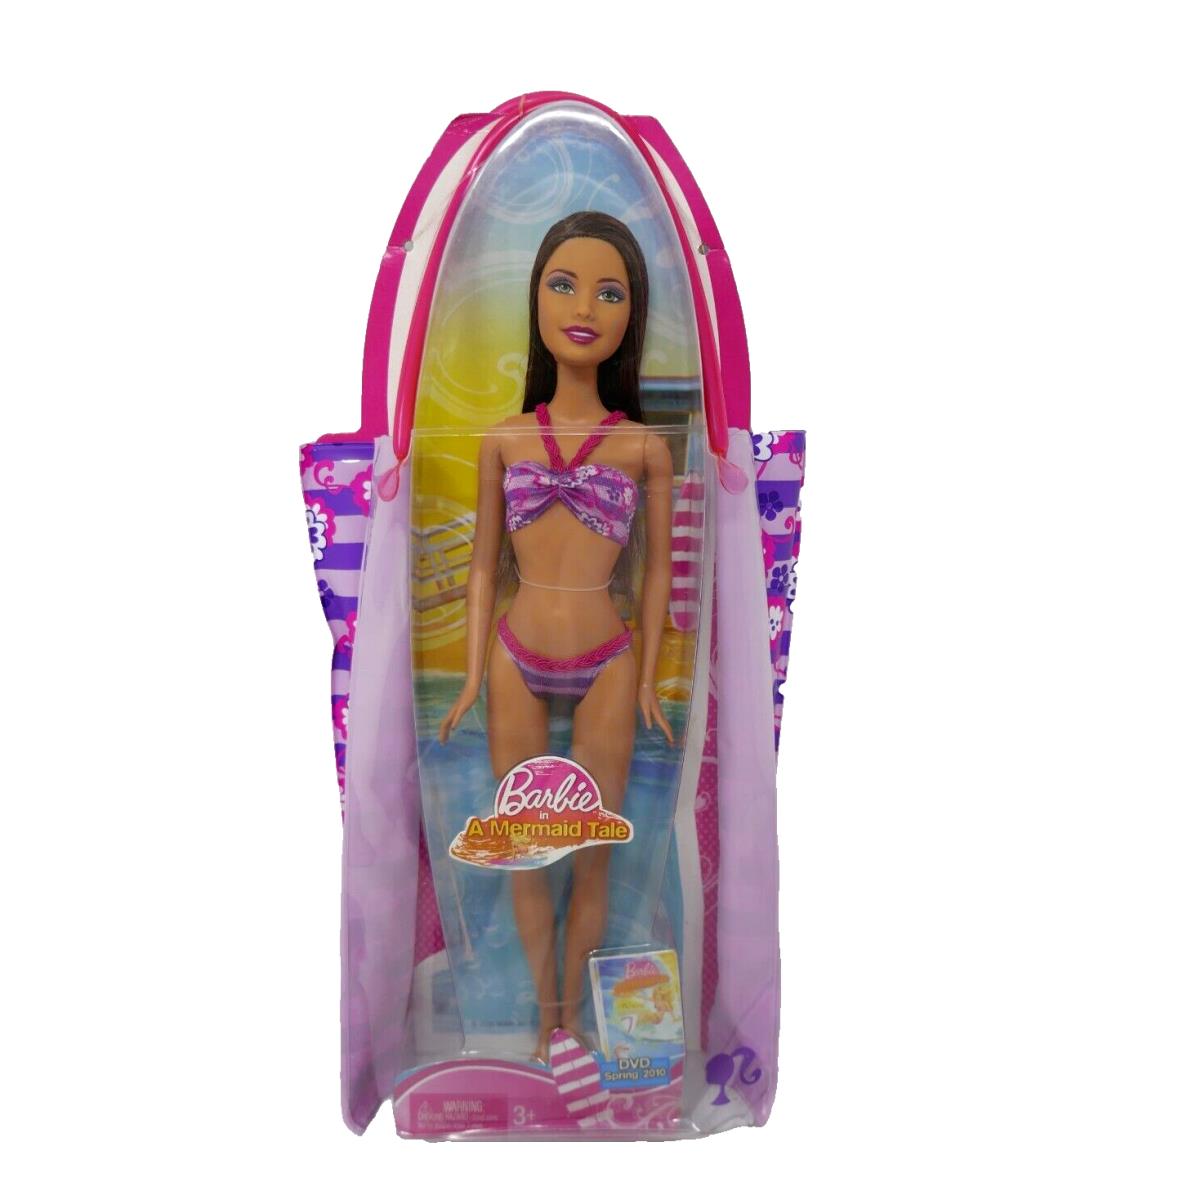 Mattel 2009 Barbie in A Mermaid Tale Water Play Fun Brunette Doll T2360